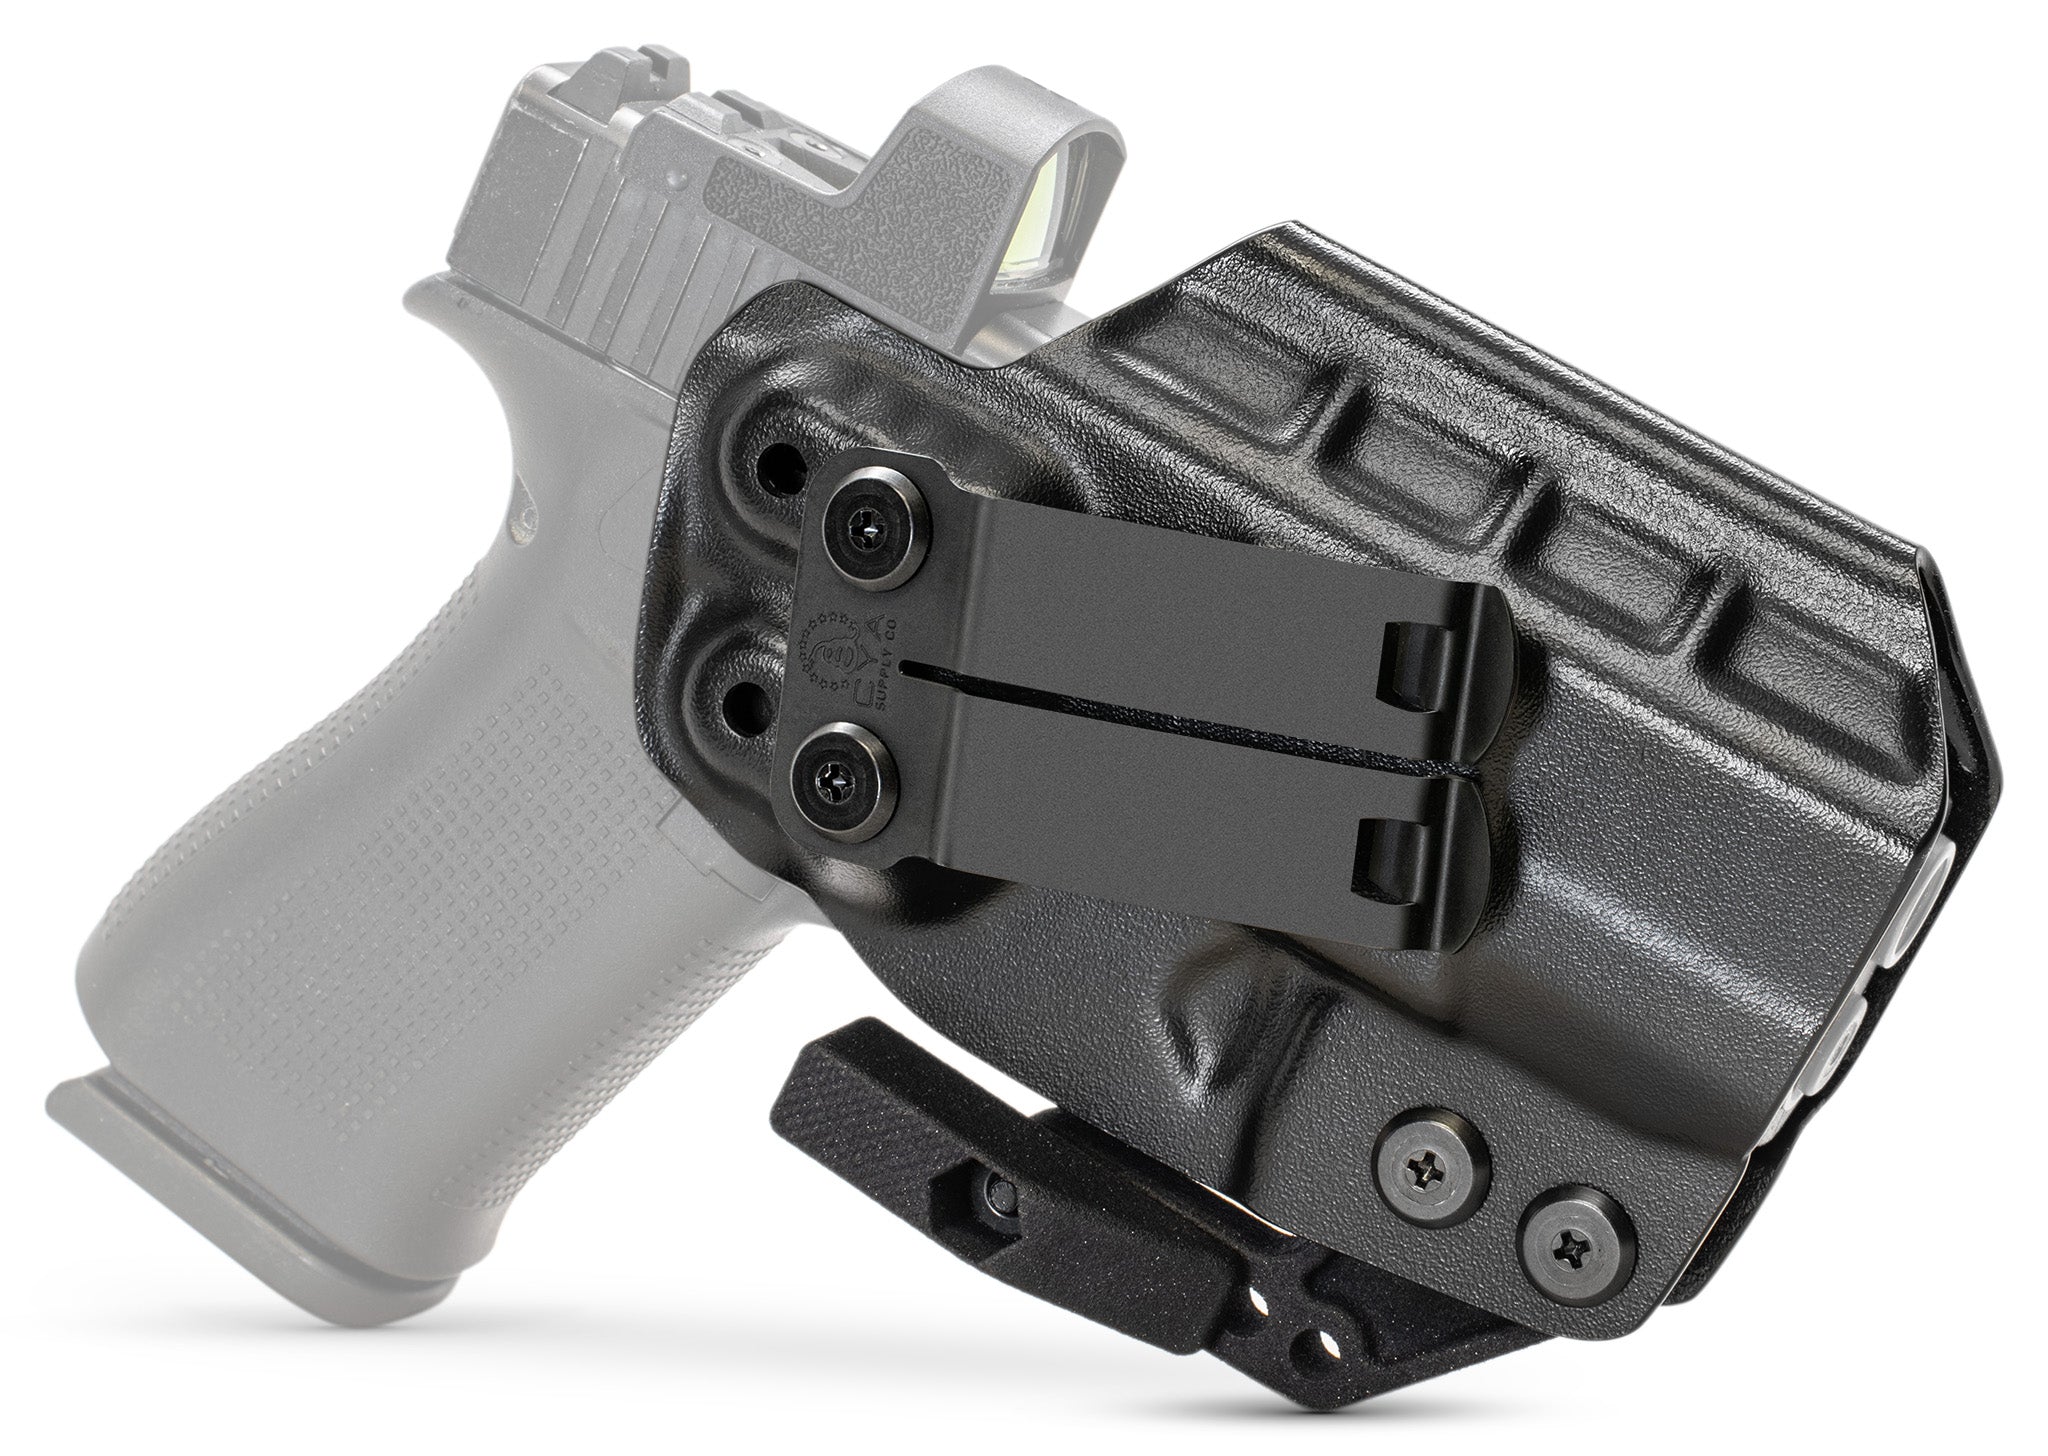 Glock 19 versus Glock 45  ANR Design Kydex Holsters